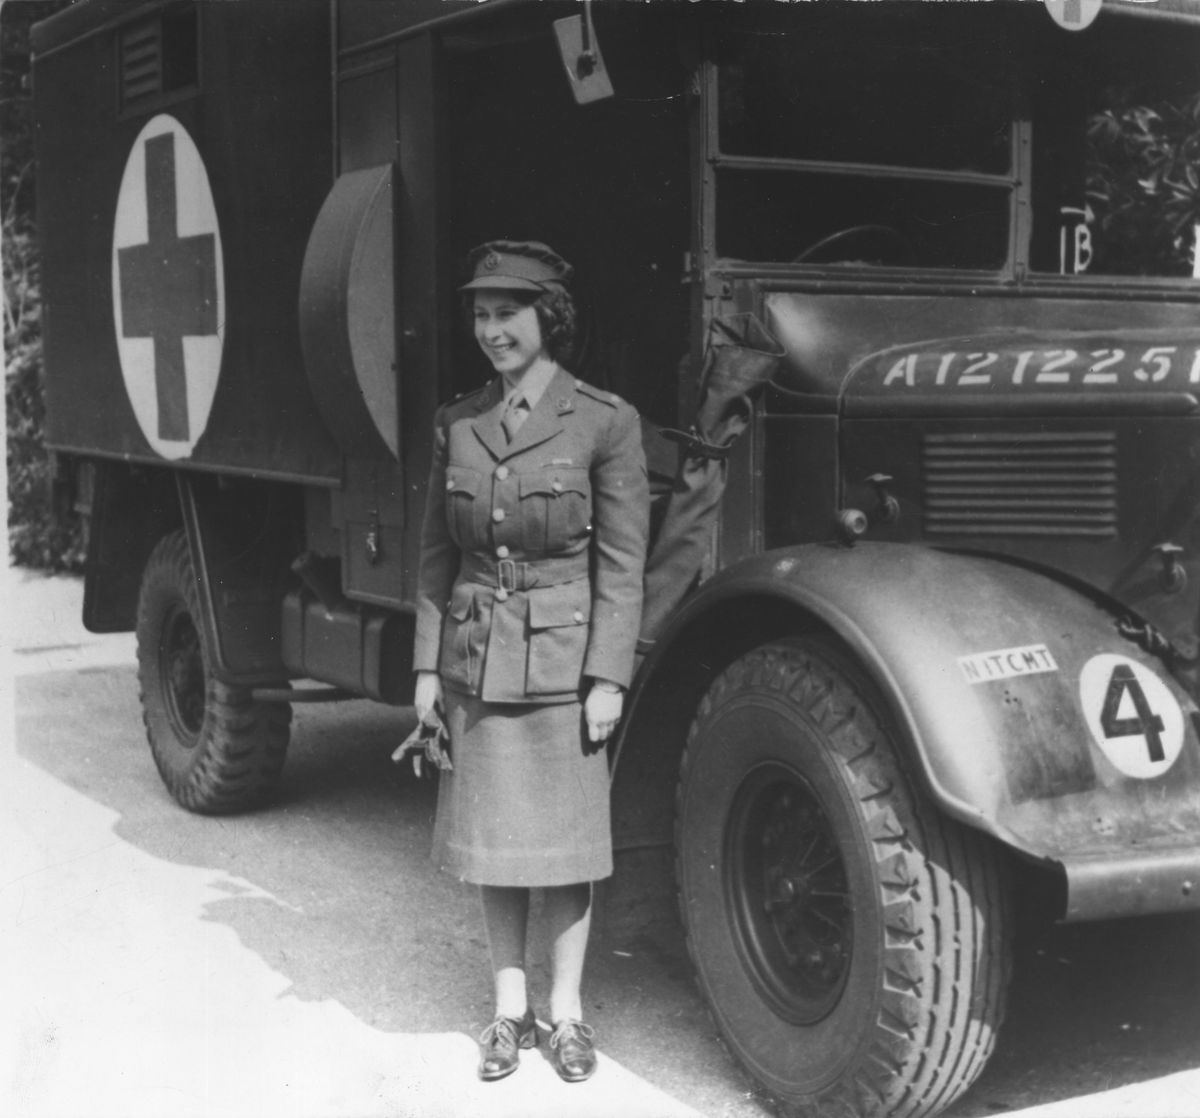 Queen Elizabeth II’s Surprising Military Role During World War II